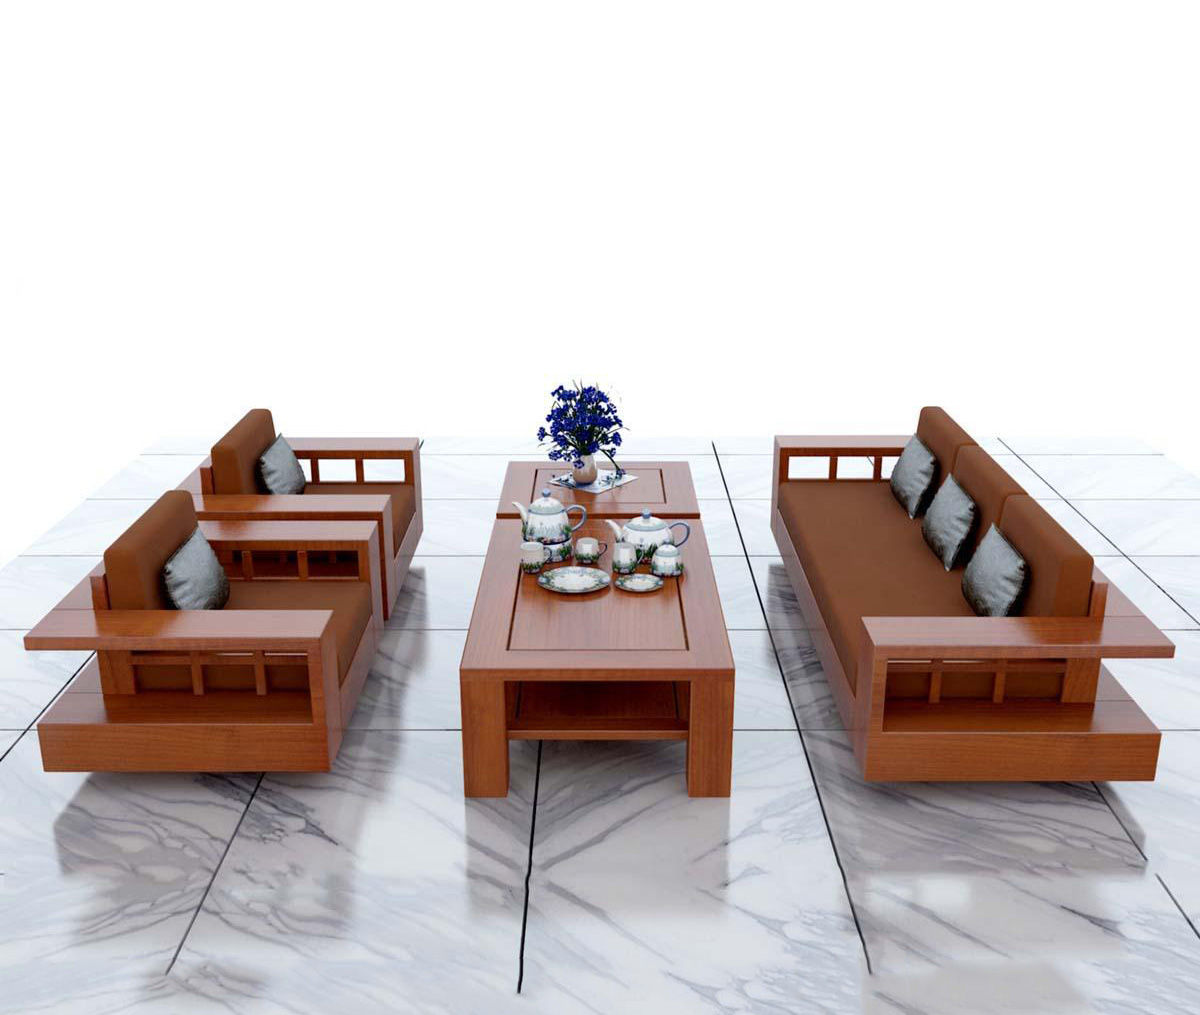 Chào mừng bạn đến với bộ sưu tập bàn ghế gỗ phòng khách đơn giản của chúng tôi. Với thiết kế tối giản, các bộ sản phẩm này sẽ khiến không gian phòng khách của bạn trở nên sang trọng hơn. Hãy dành chút thời gian để khám phá những đường nét tinh tế trên các sản phẩm này.